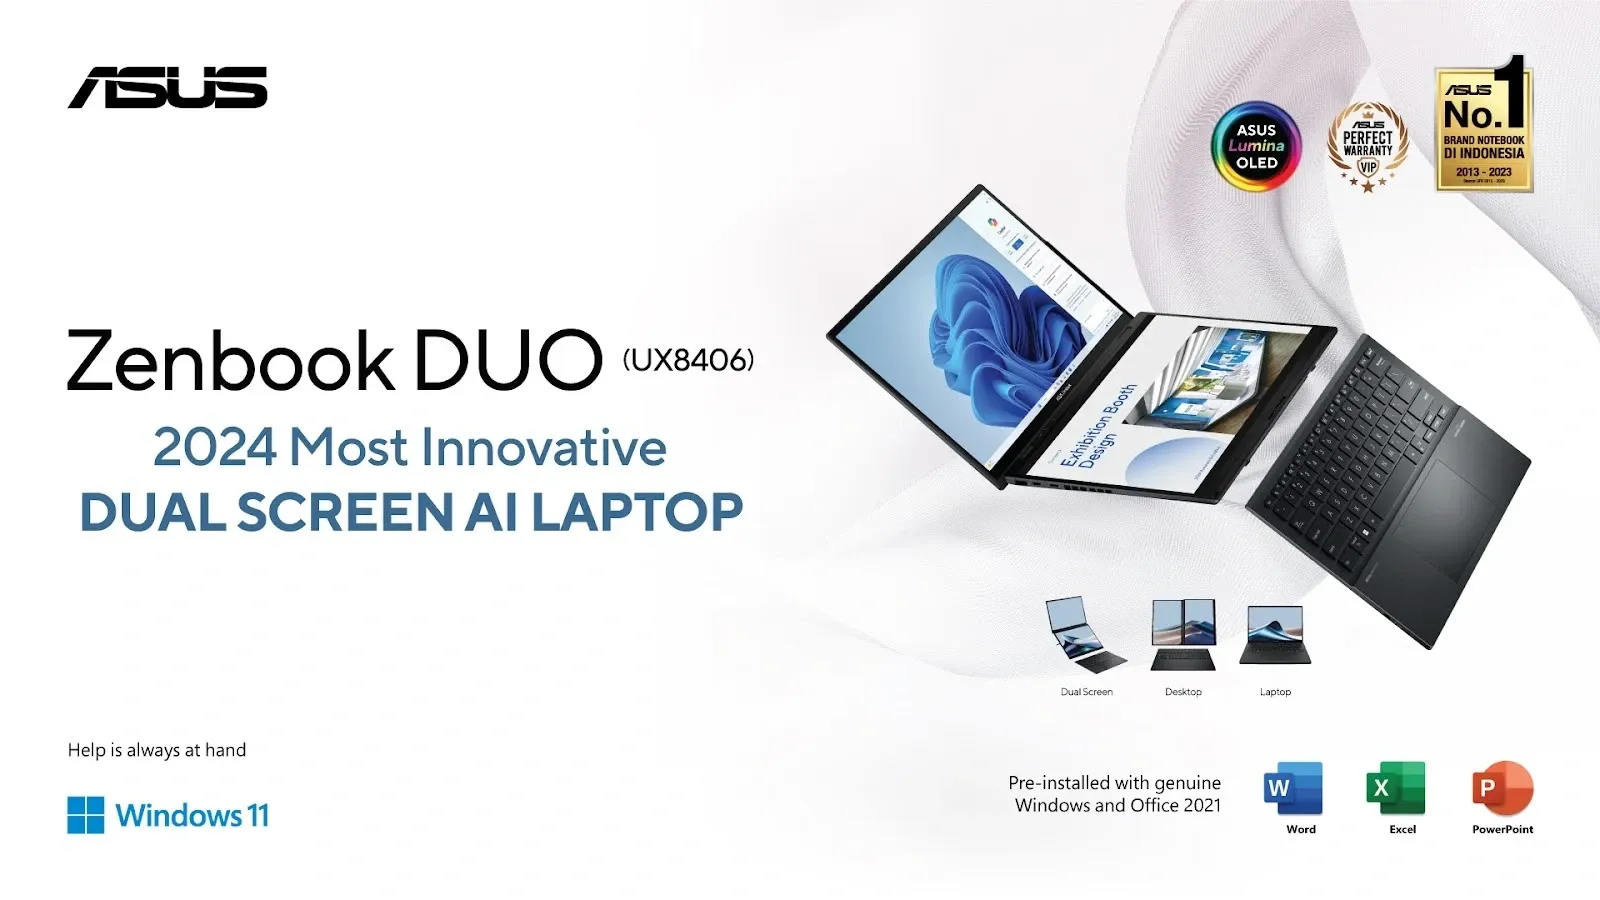 ASUS Zenbook DUO (UX8406), Laptop Dua Layar Terbaik